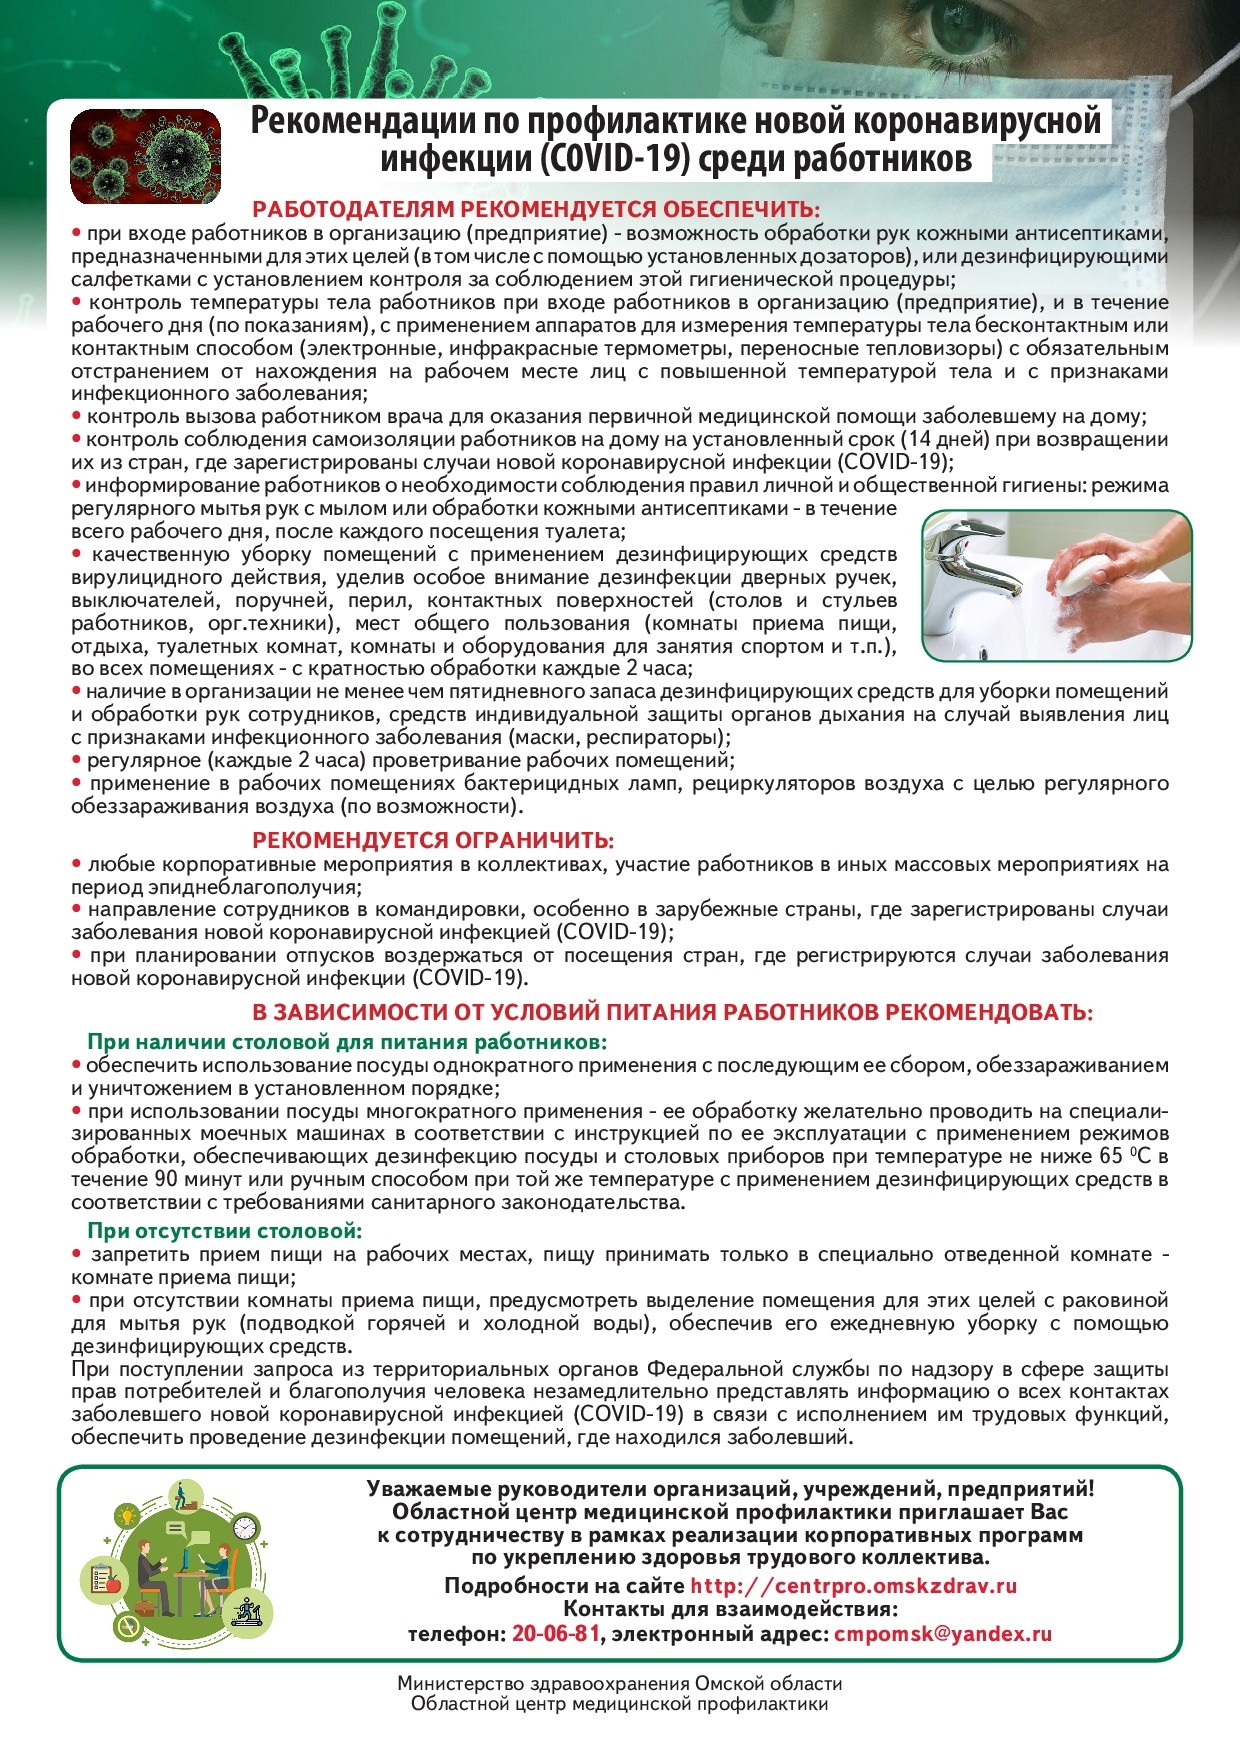 Рекомендации по профилактике коронавируса (1)